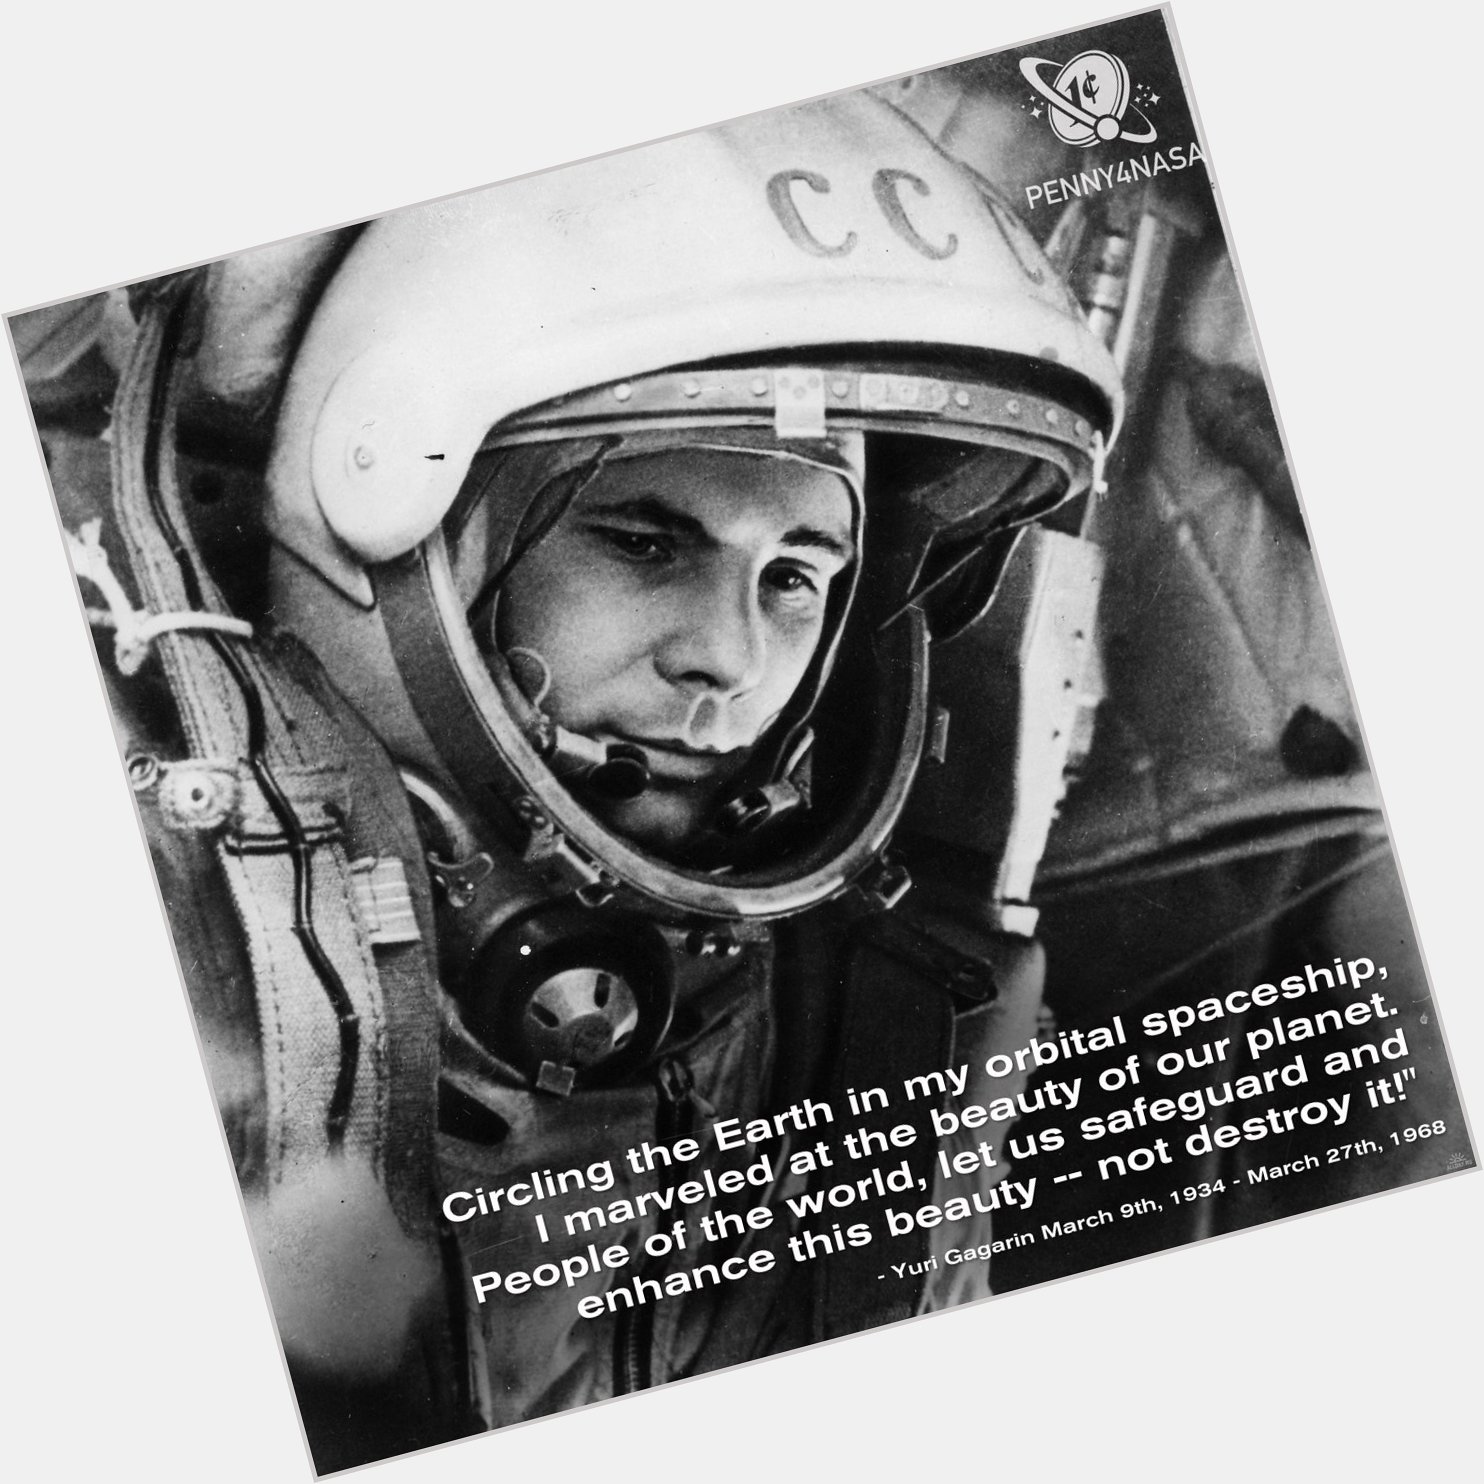 Happy Birthday Yuri Gagarin!  